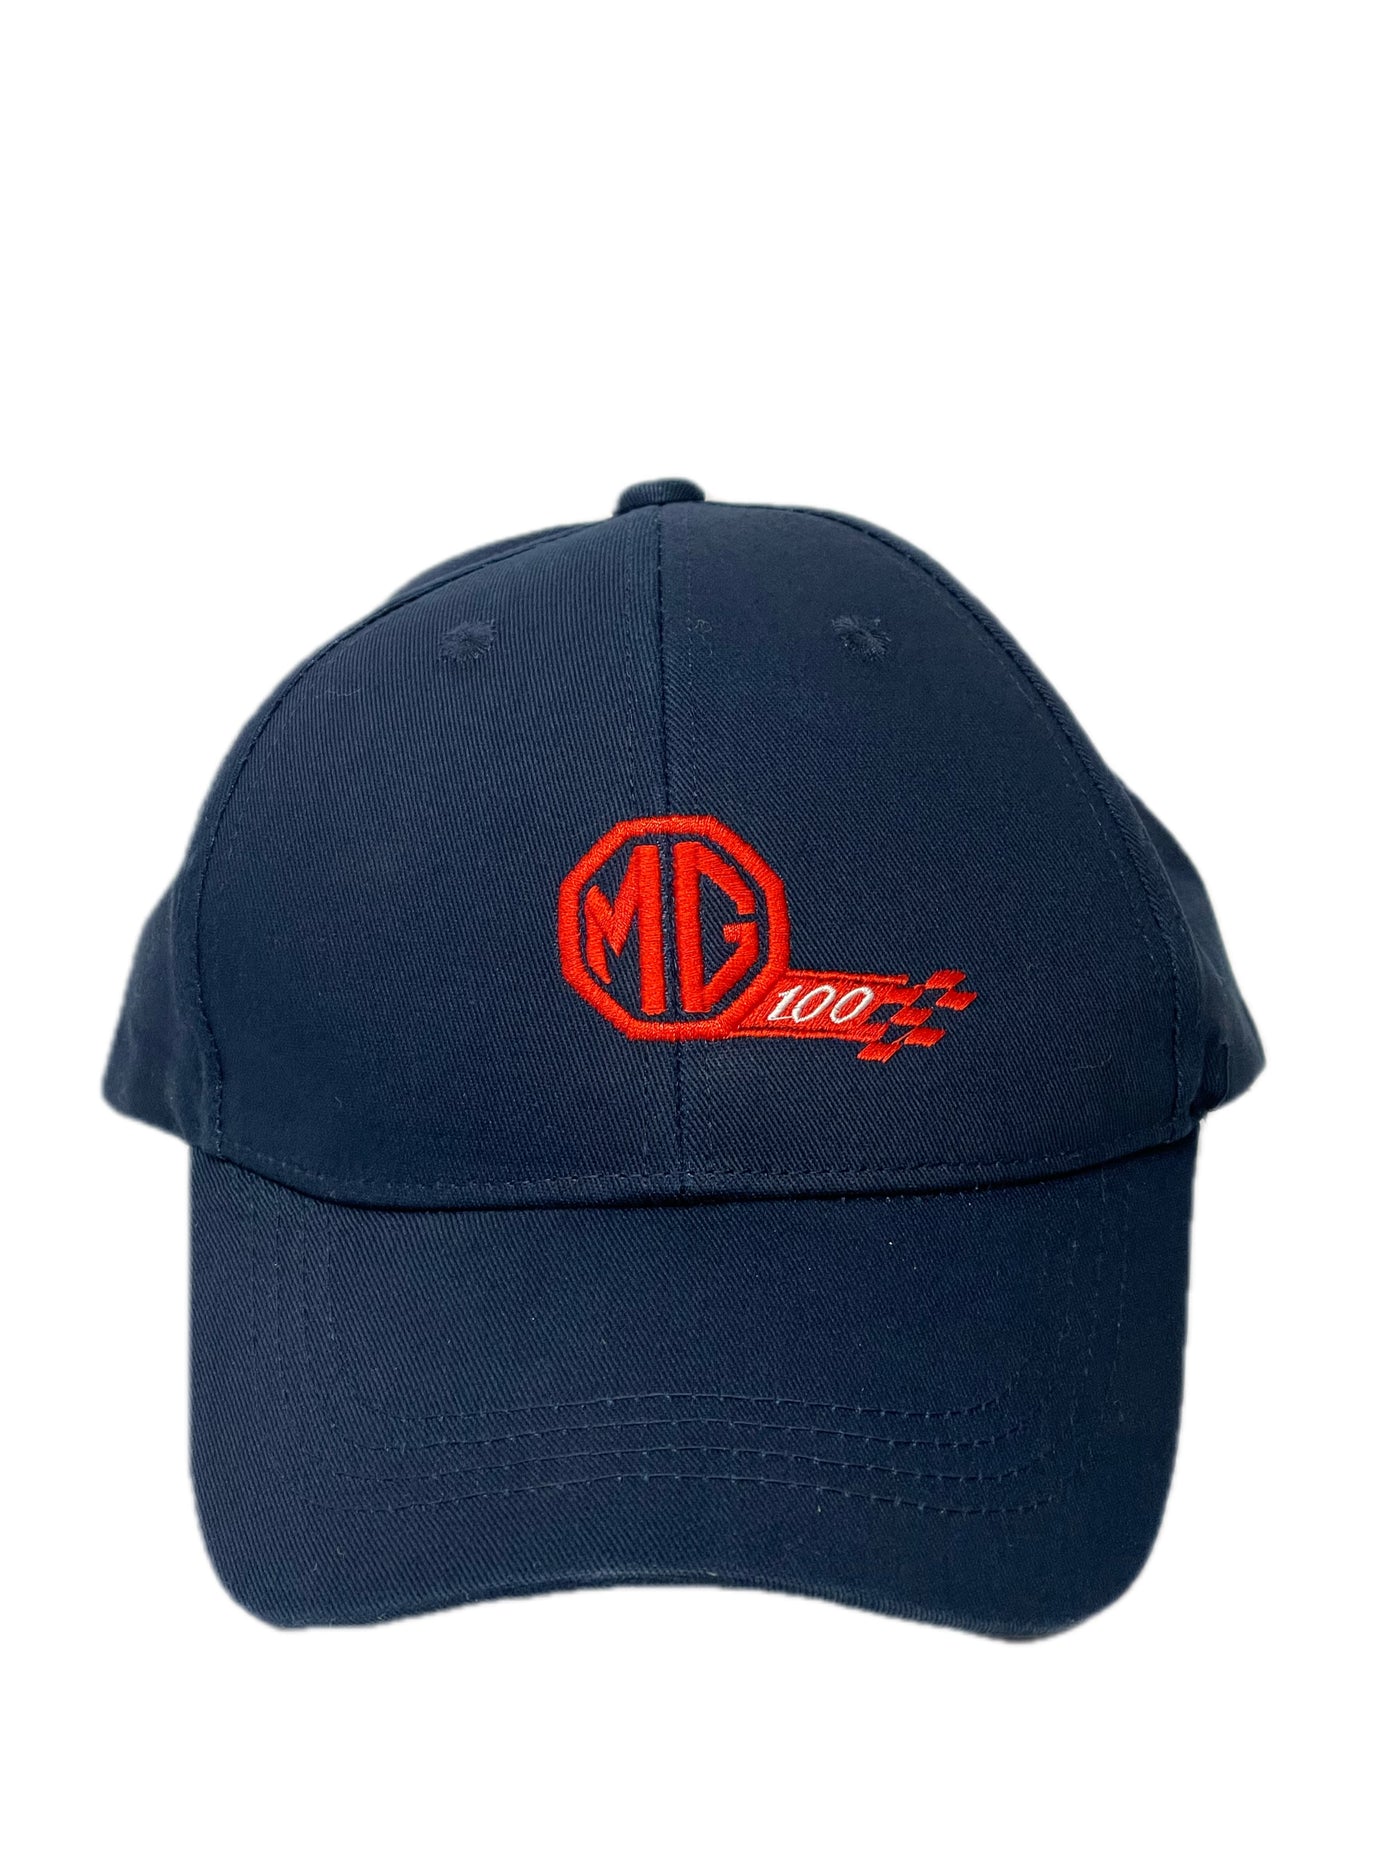 MG100 Baseball Cap